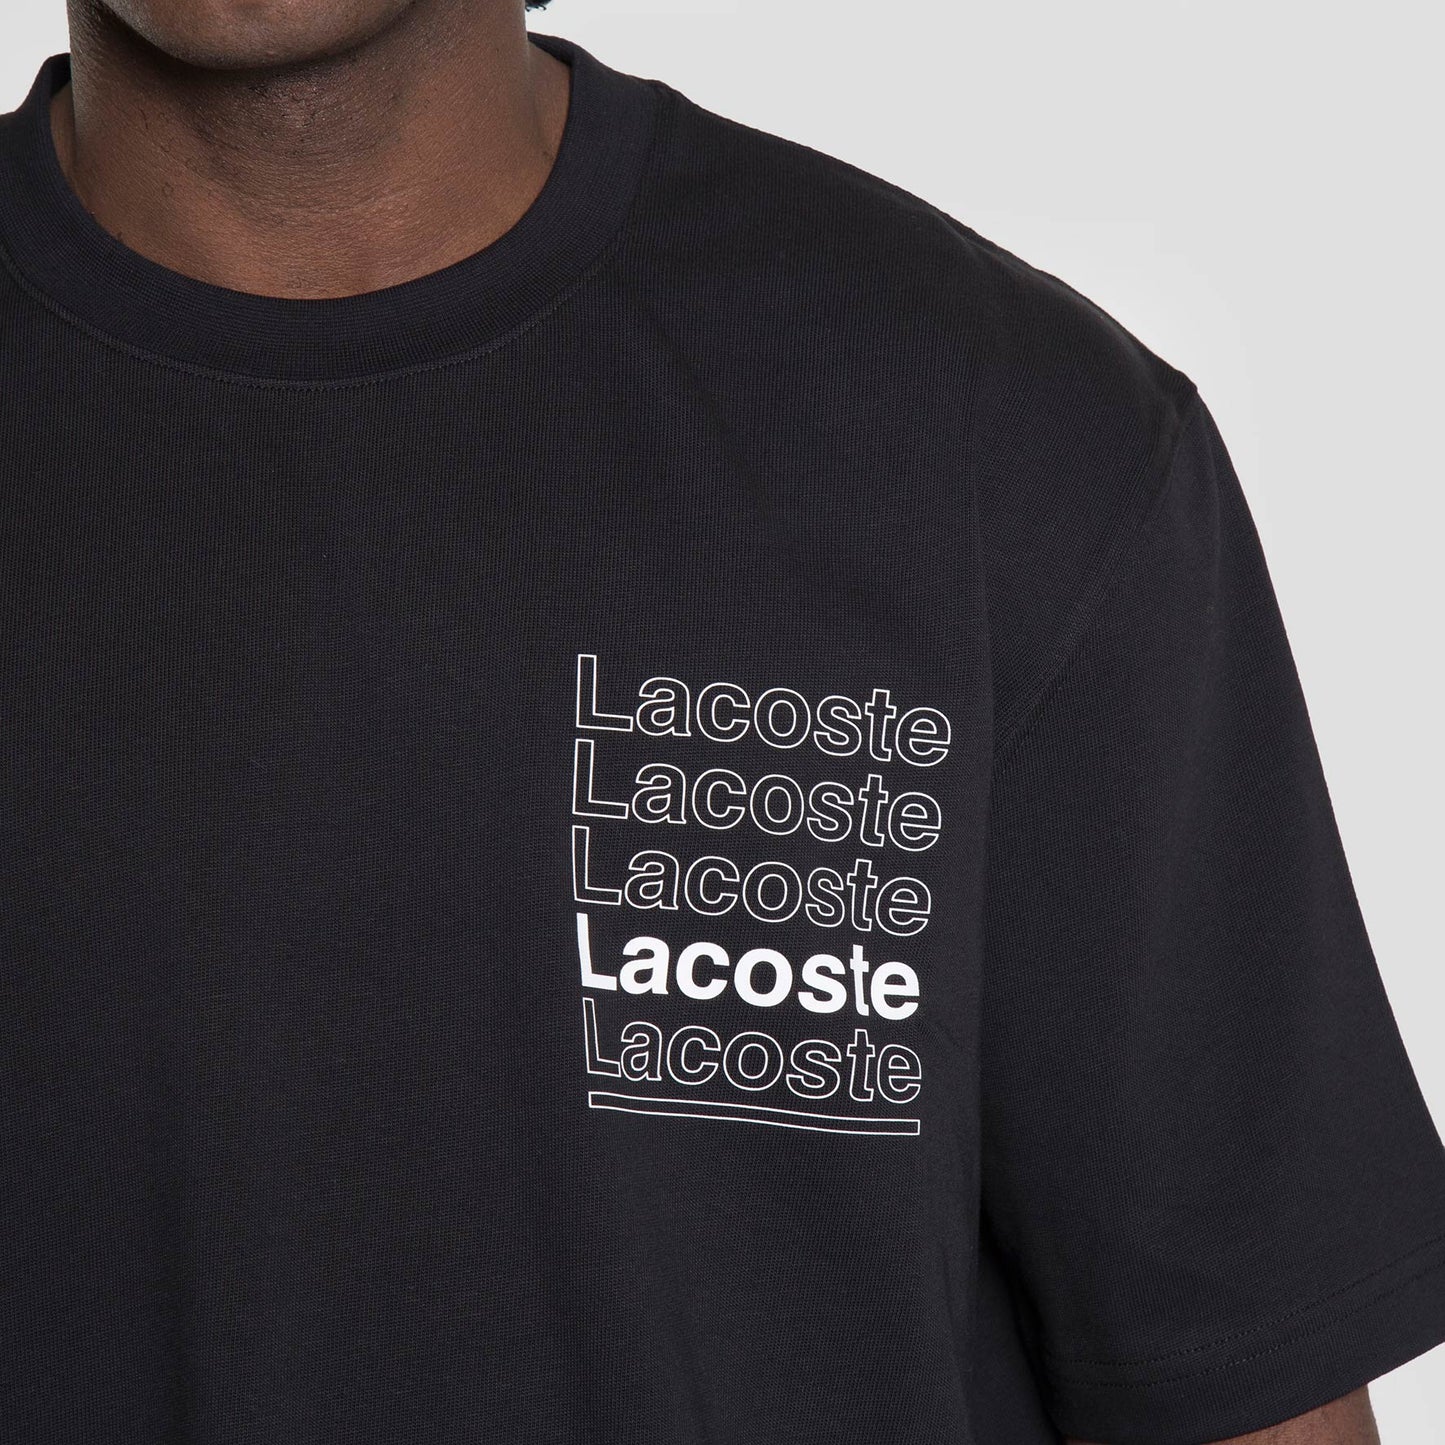 Lacoste Live Camiseta - TH7293-031 - Colección Chico